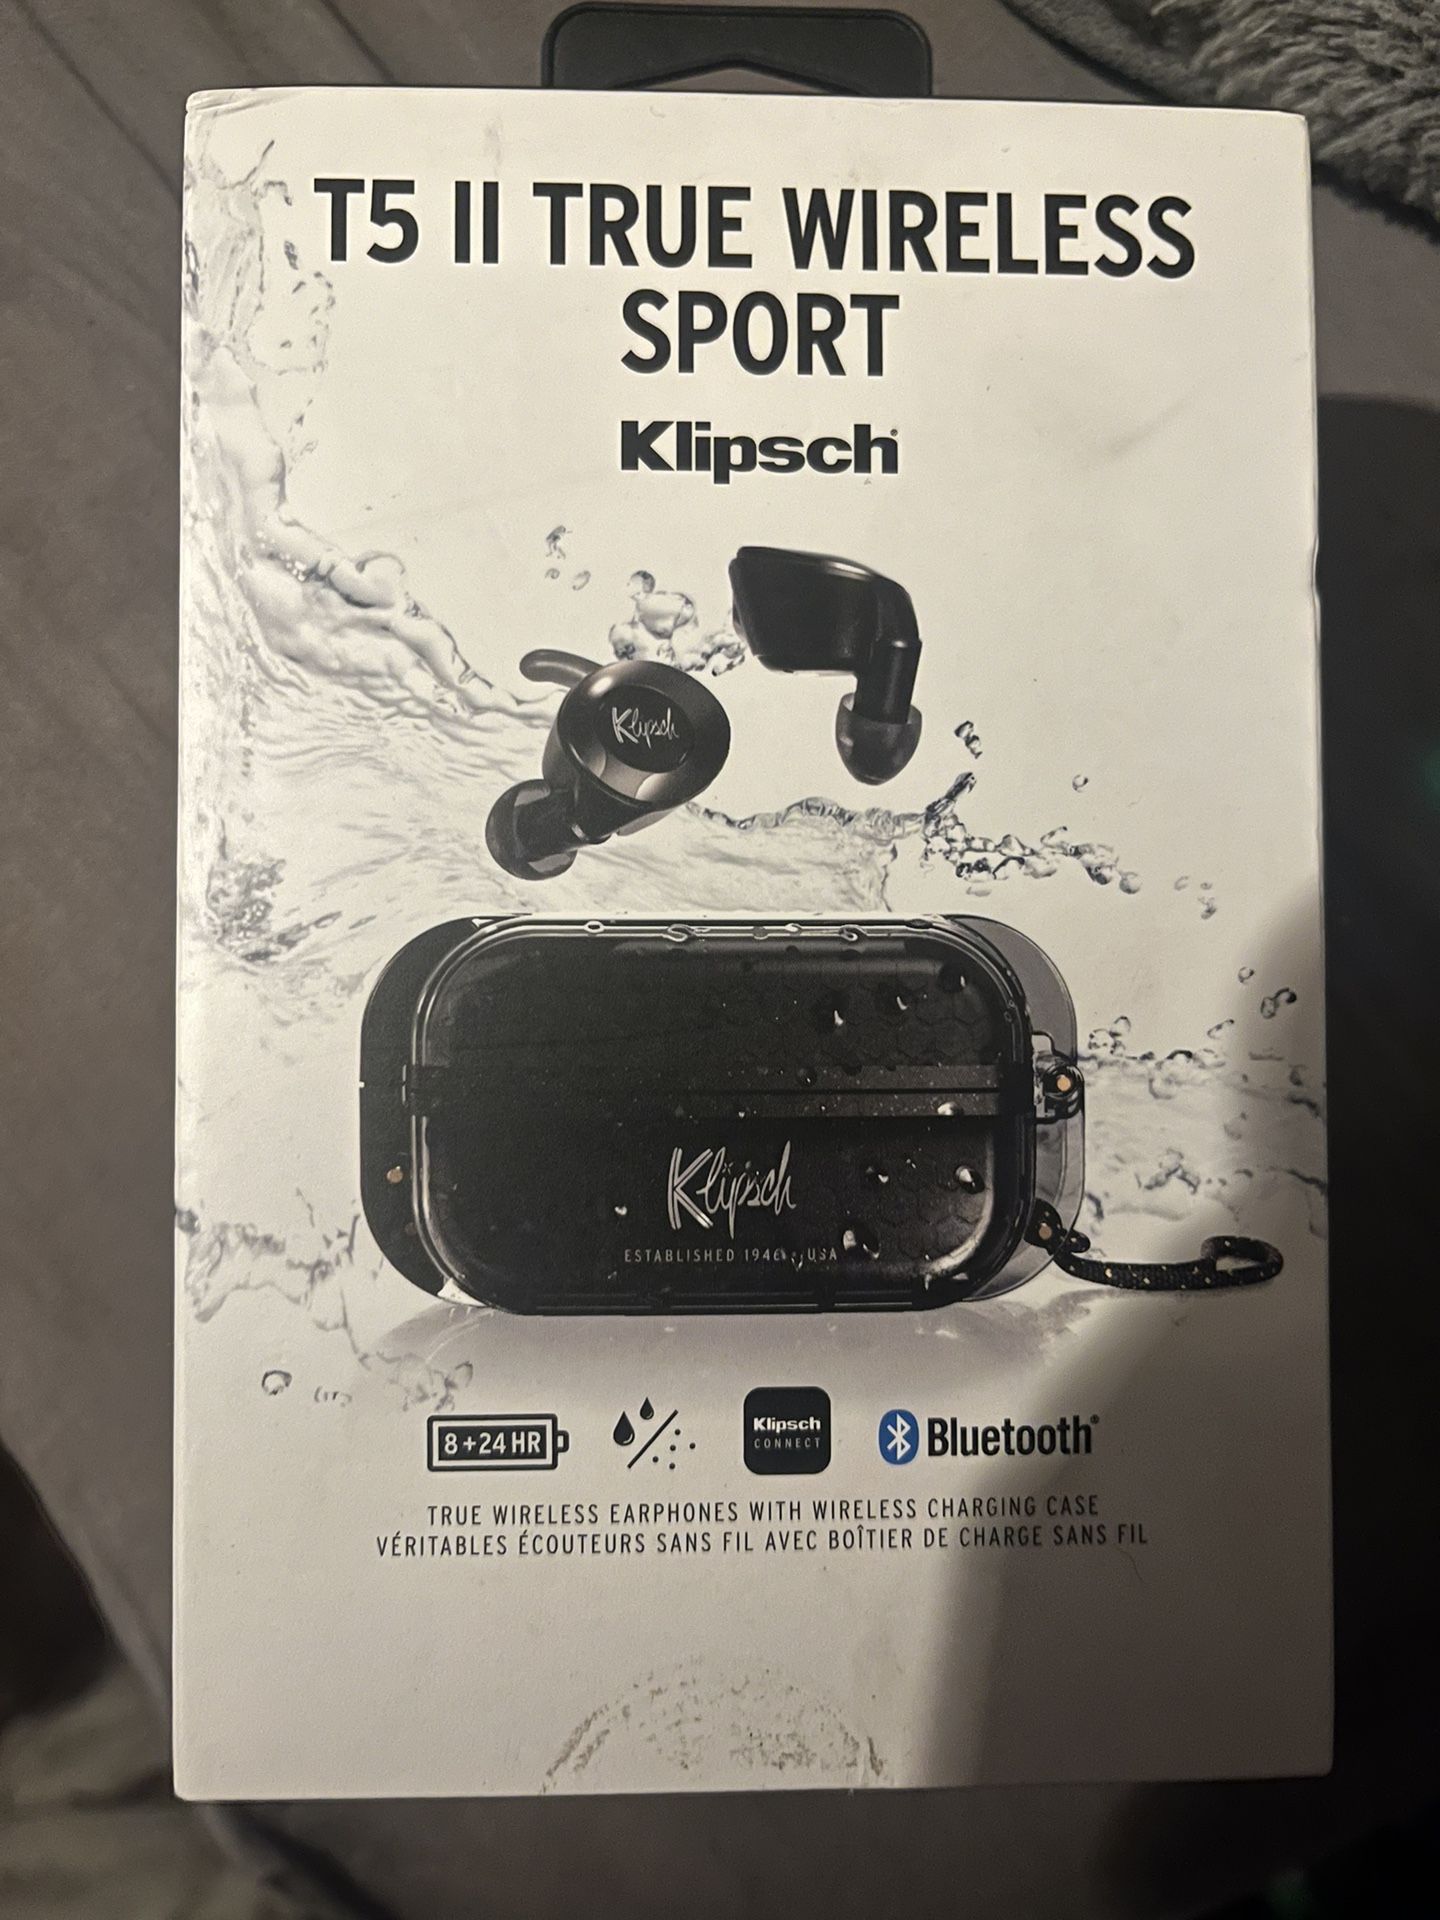 Klipsch T5 II True Wireless Sport Earphones in Black with Dust/Waterproof Case & Earbuds, Best Fitting Ear Tips, 